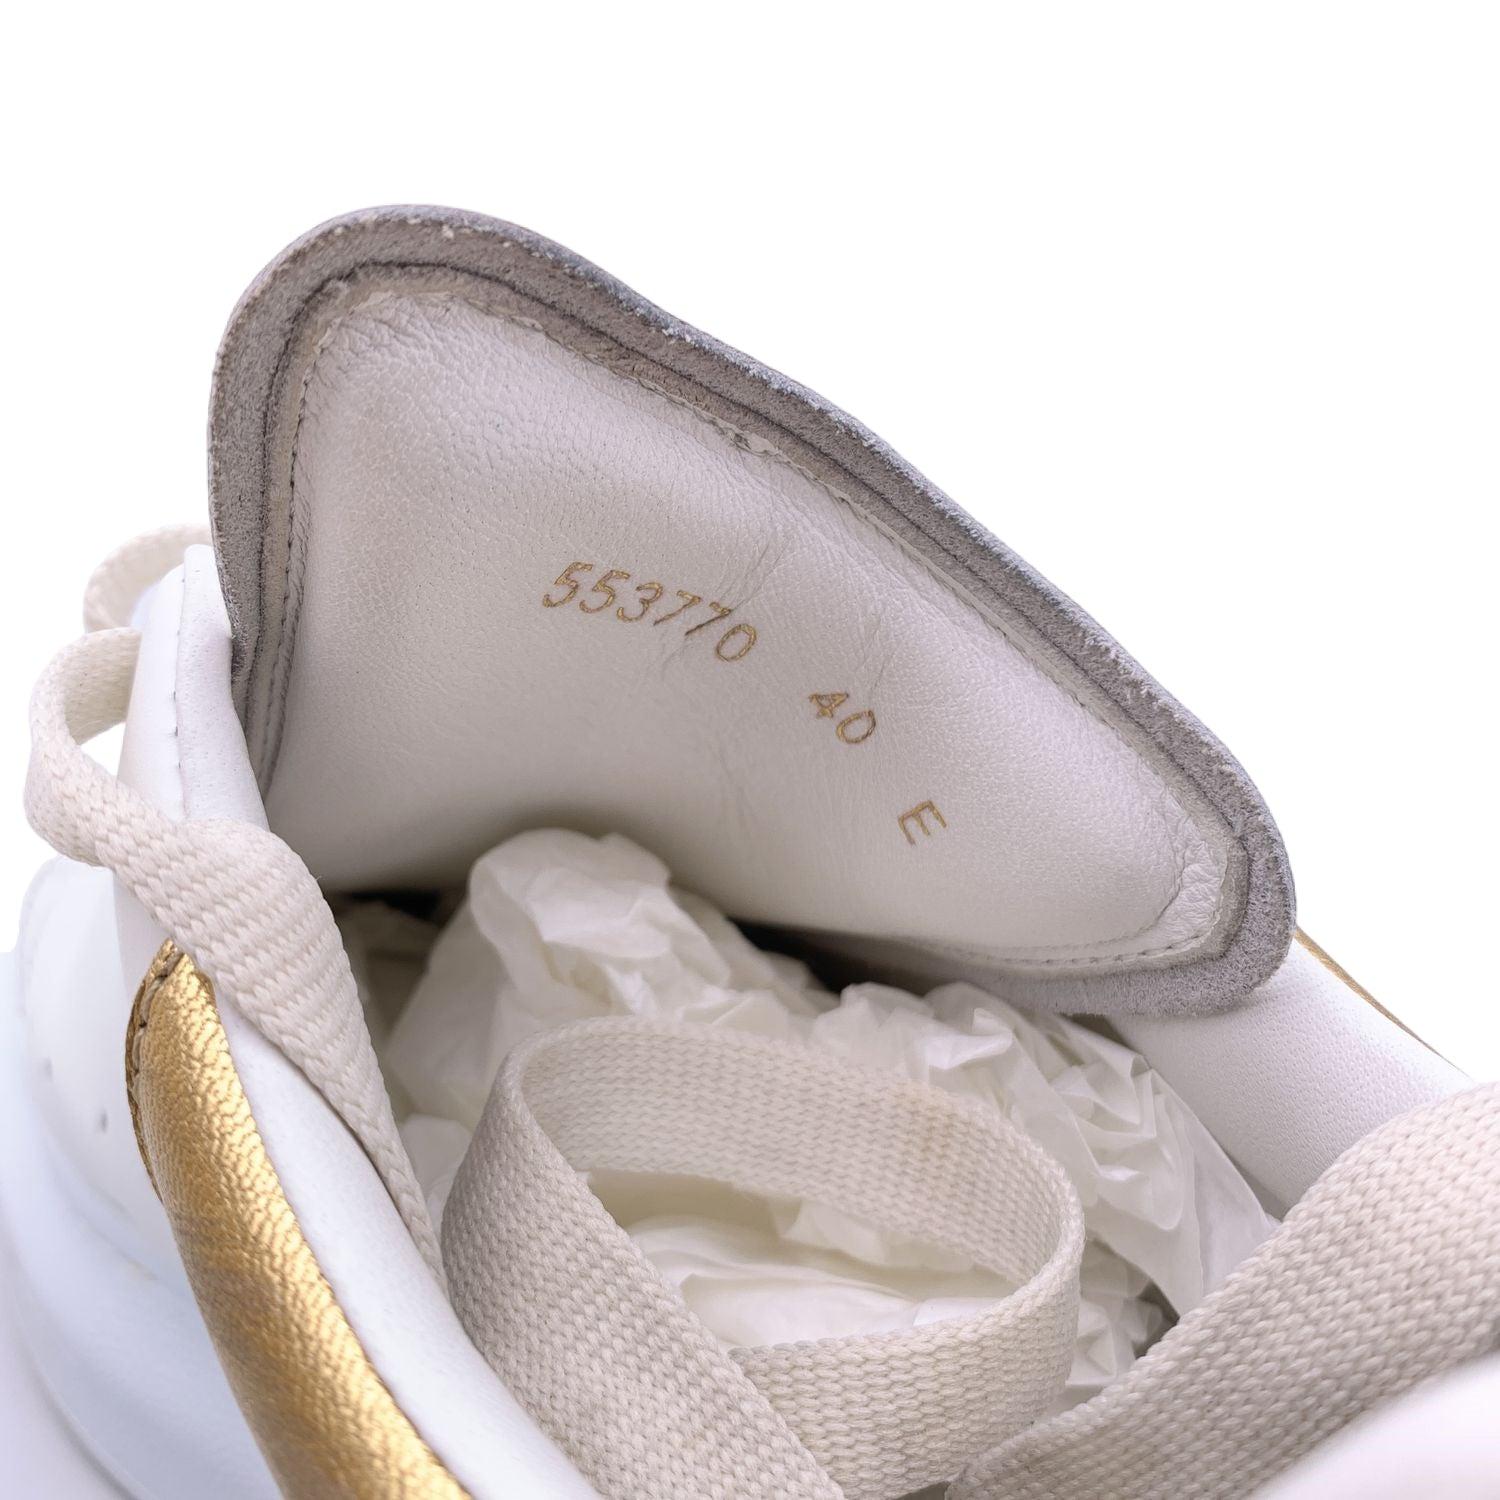  Alexander McQueen - Chaussures de sport à lacets, or blanc, taille 40 Unisexe 